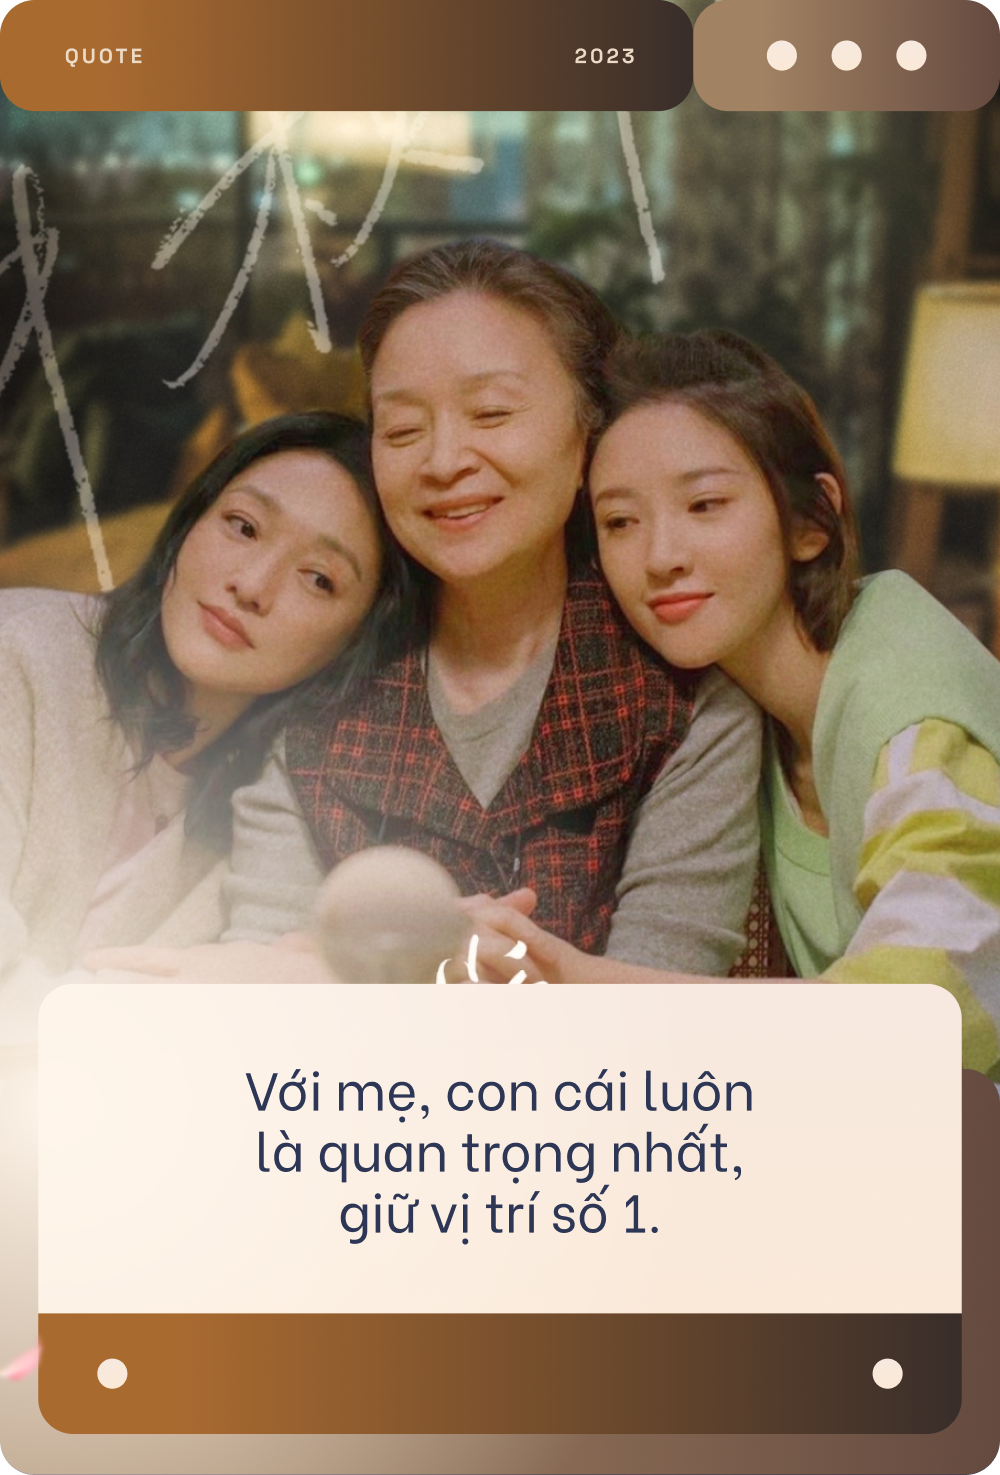 Phim gia đình hay nhất của Châu Tấn: Đàn bà bước qua đổ vỡ, ly hôn mất quyền nuôi con và cái giá của việc tái hôn - Ảnh 2.